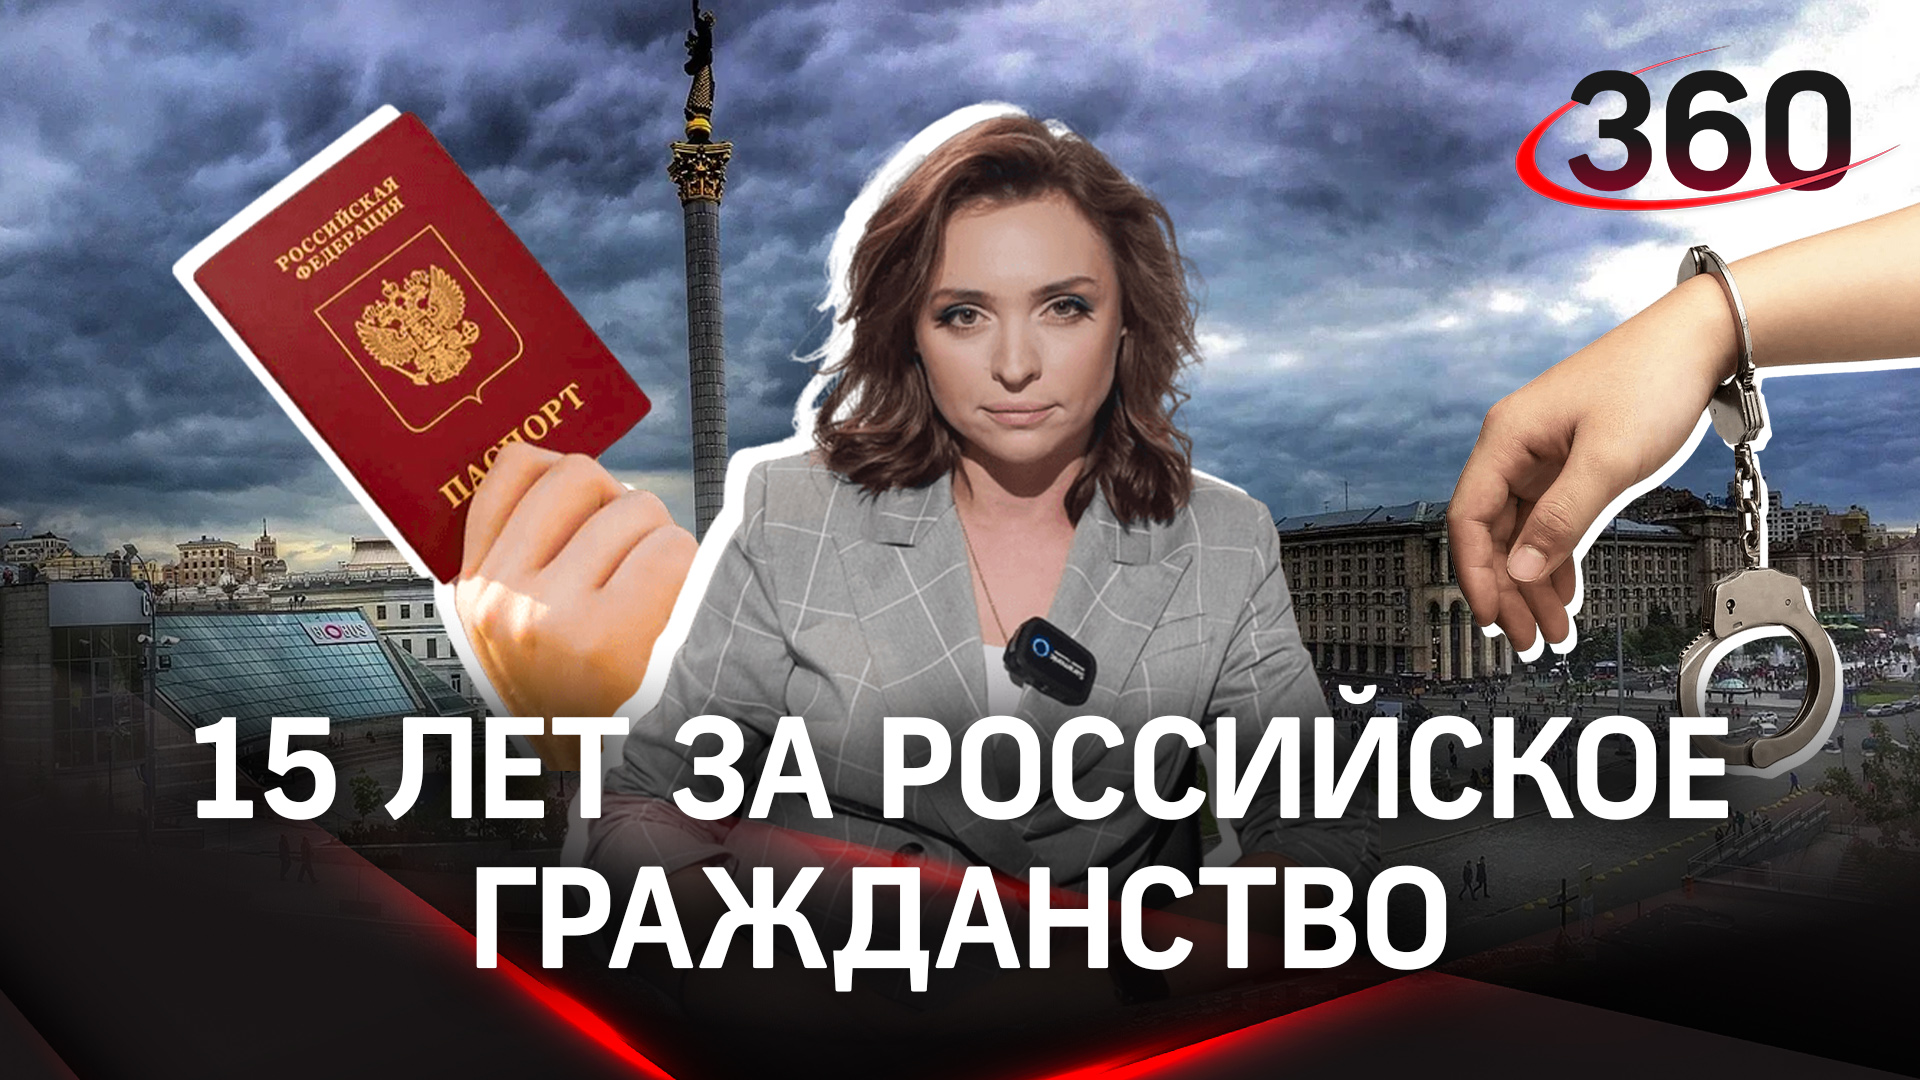 15 лет за паспорт. На Украине вводят уголовную ответственность за российское гражданство